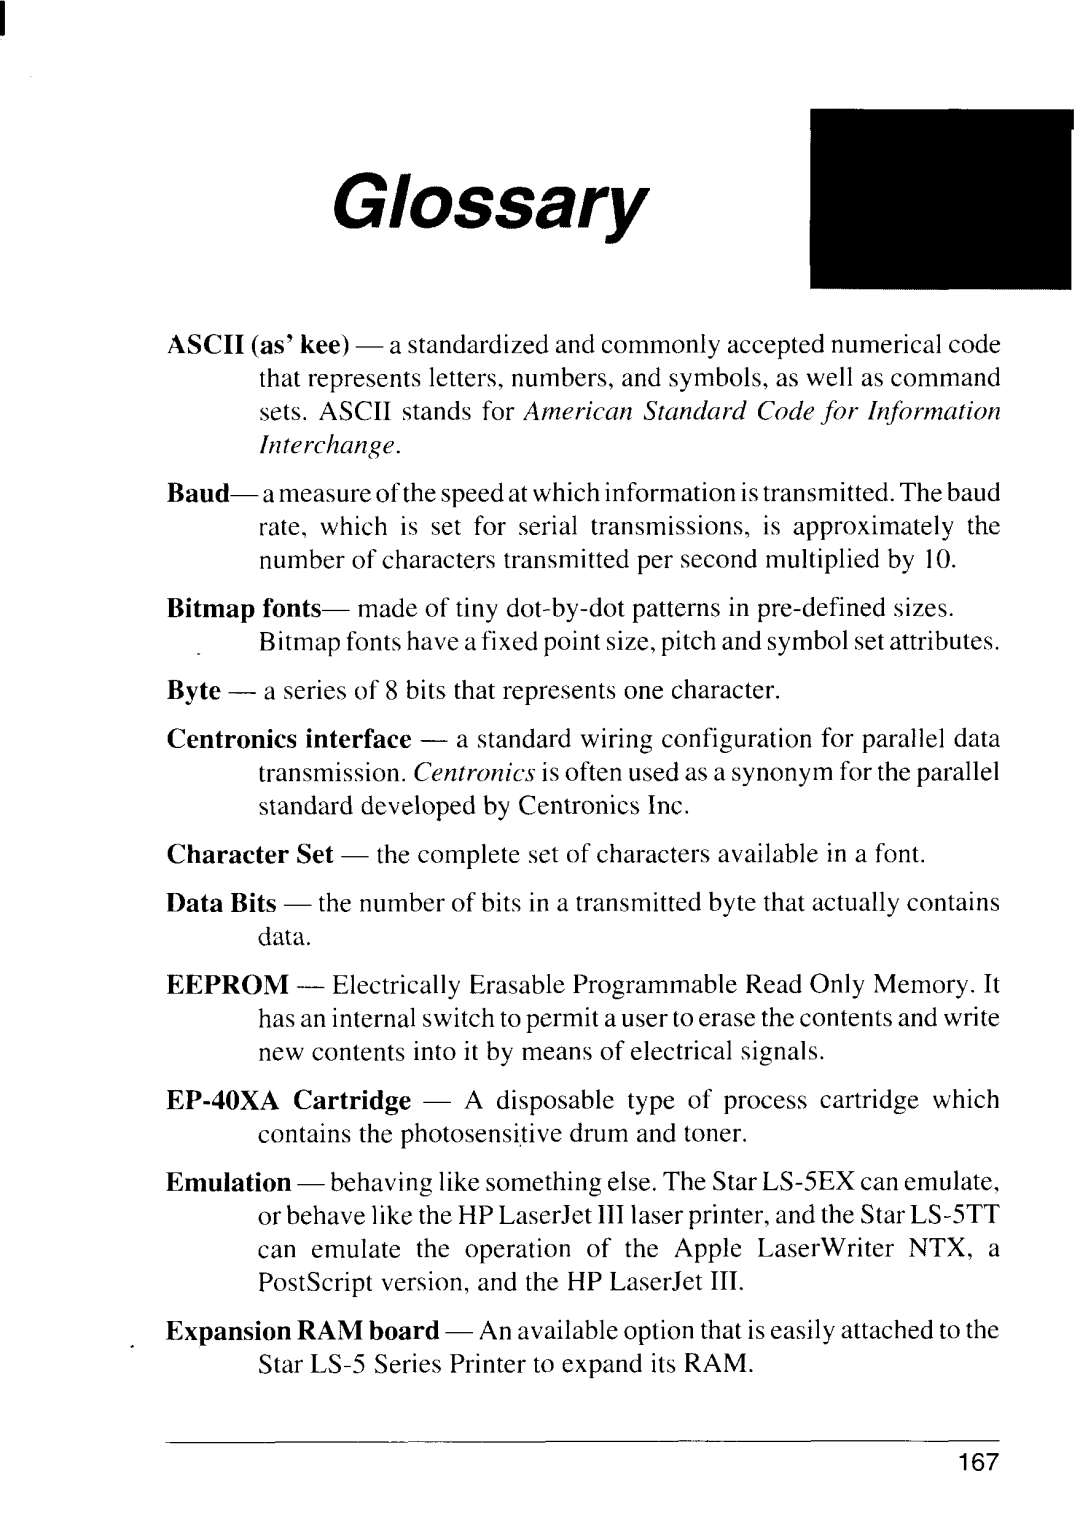 Star Micronics LS-5 TT, LS-5 EX operation manual Glossary 